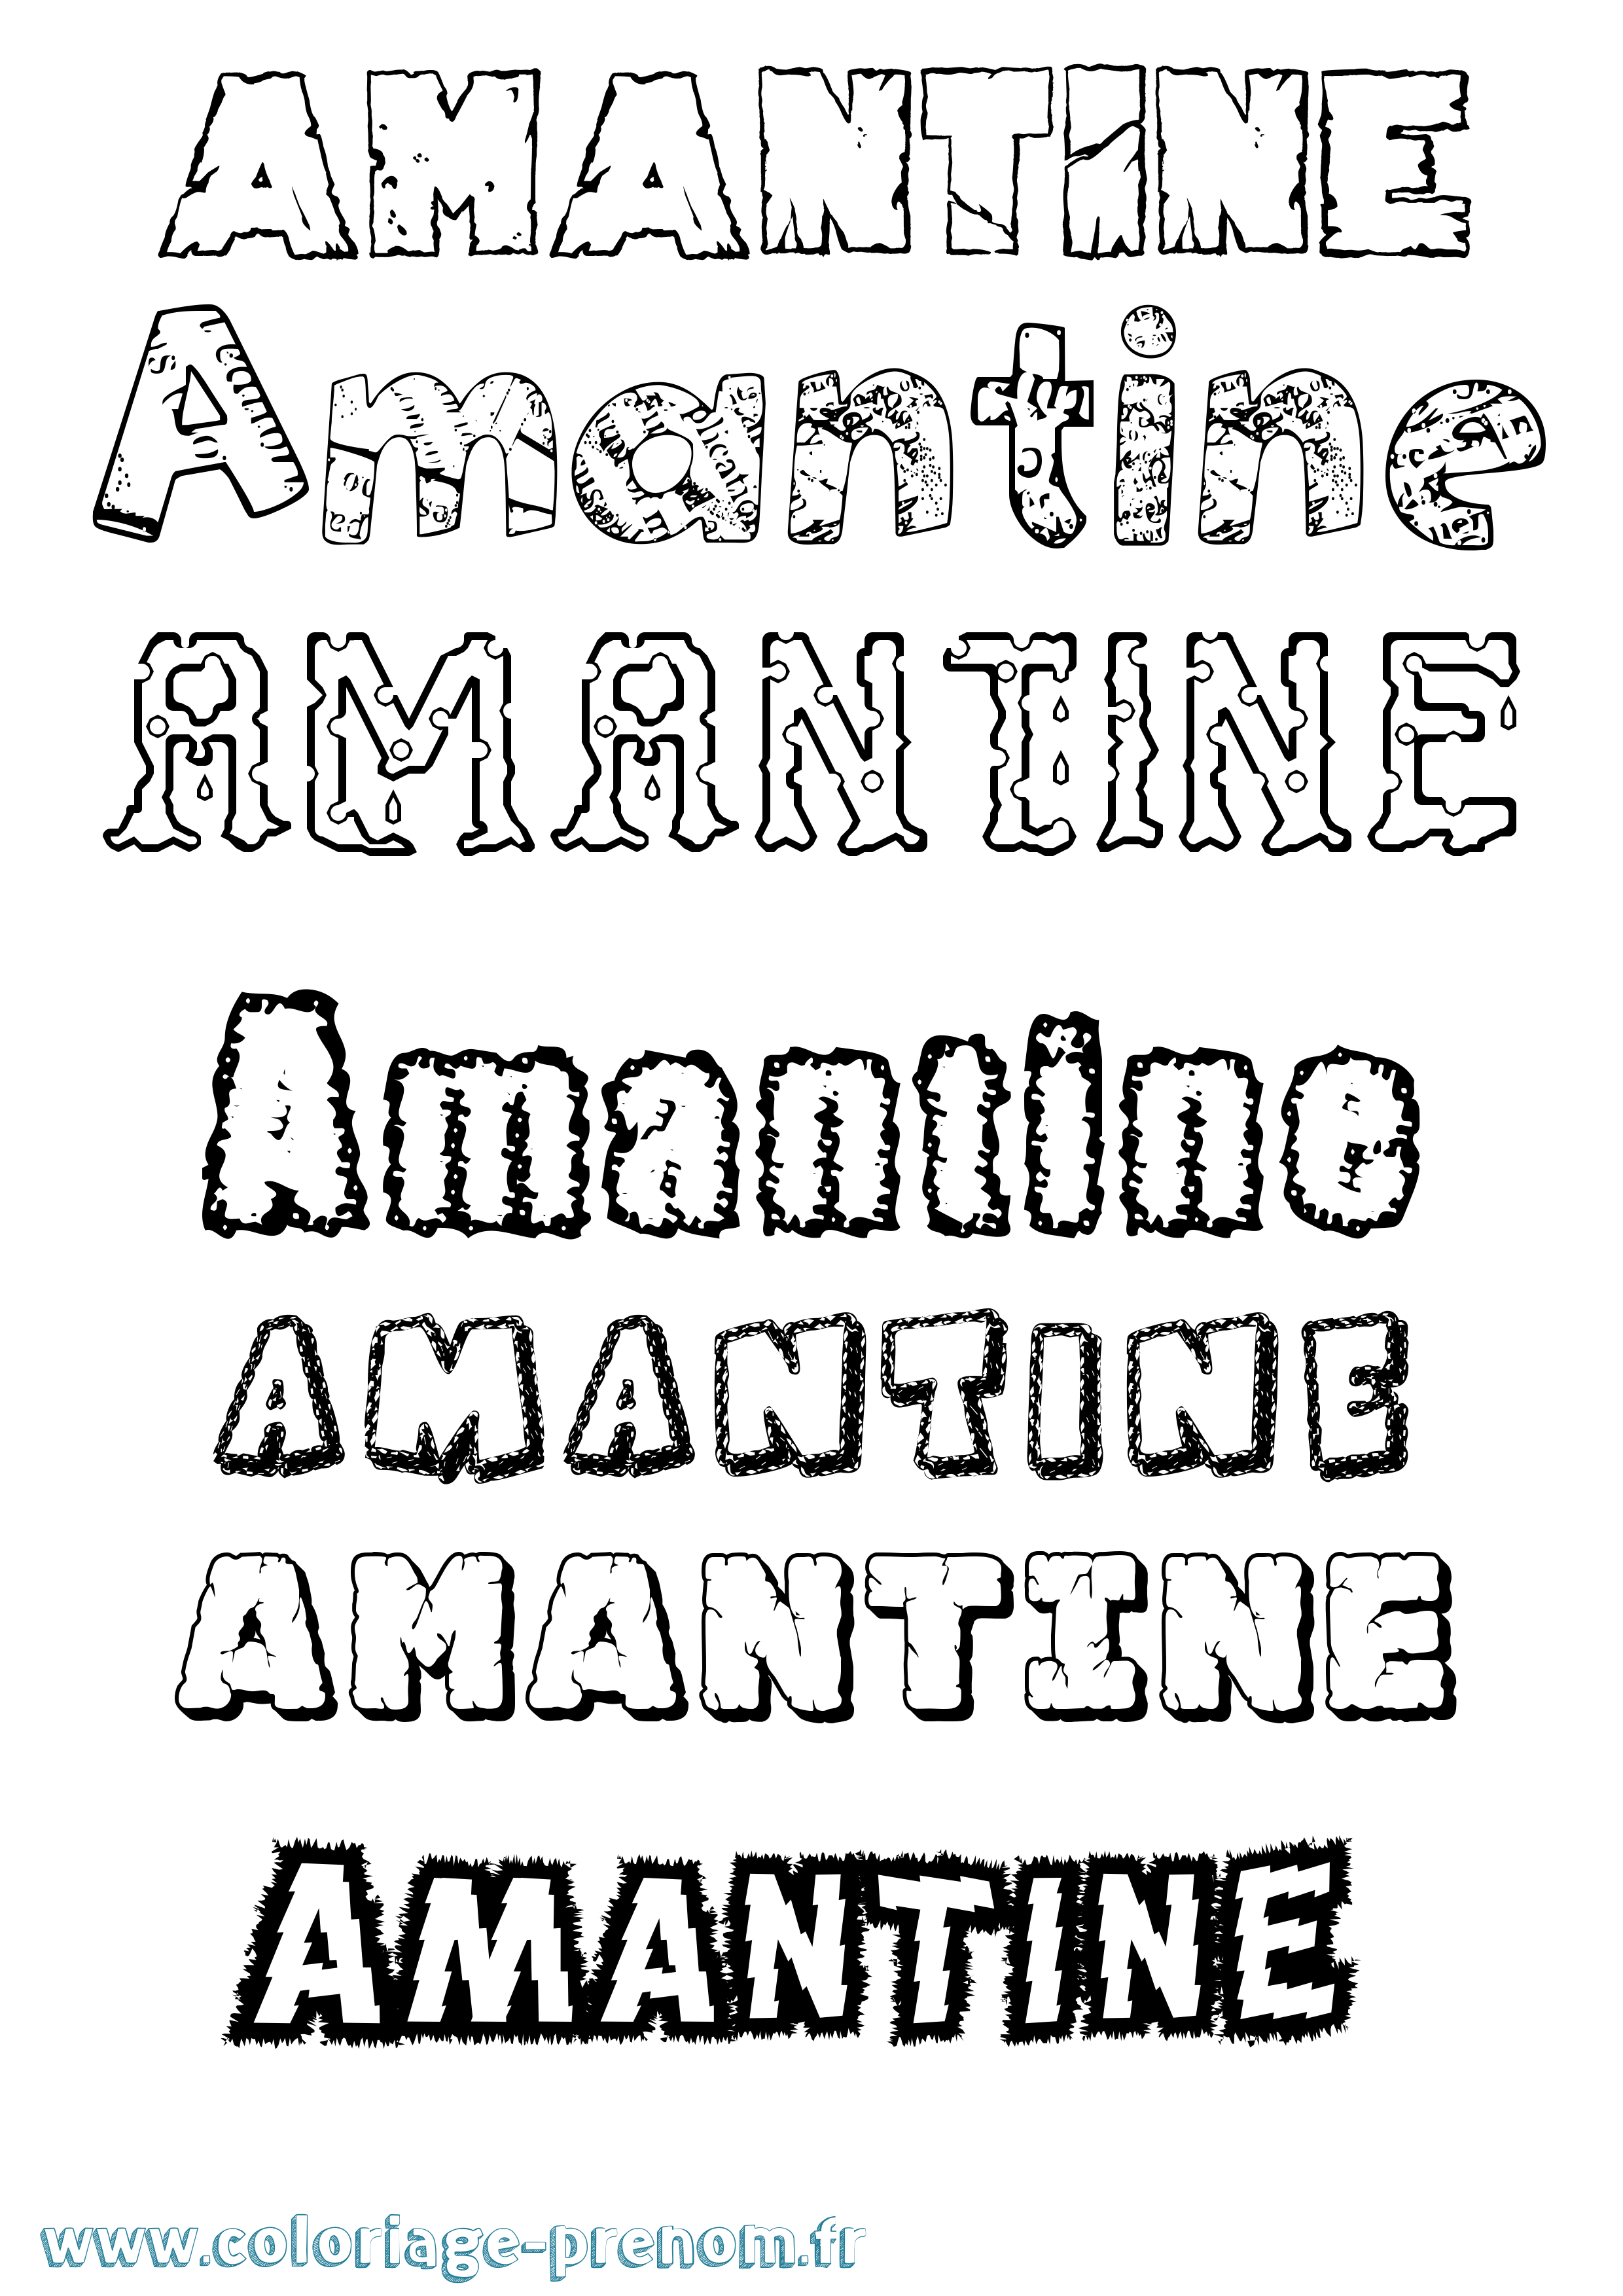 Coloriage prénom Amantine Destructuré